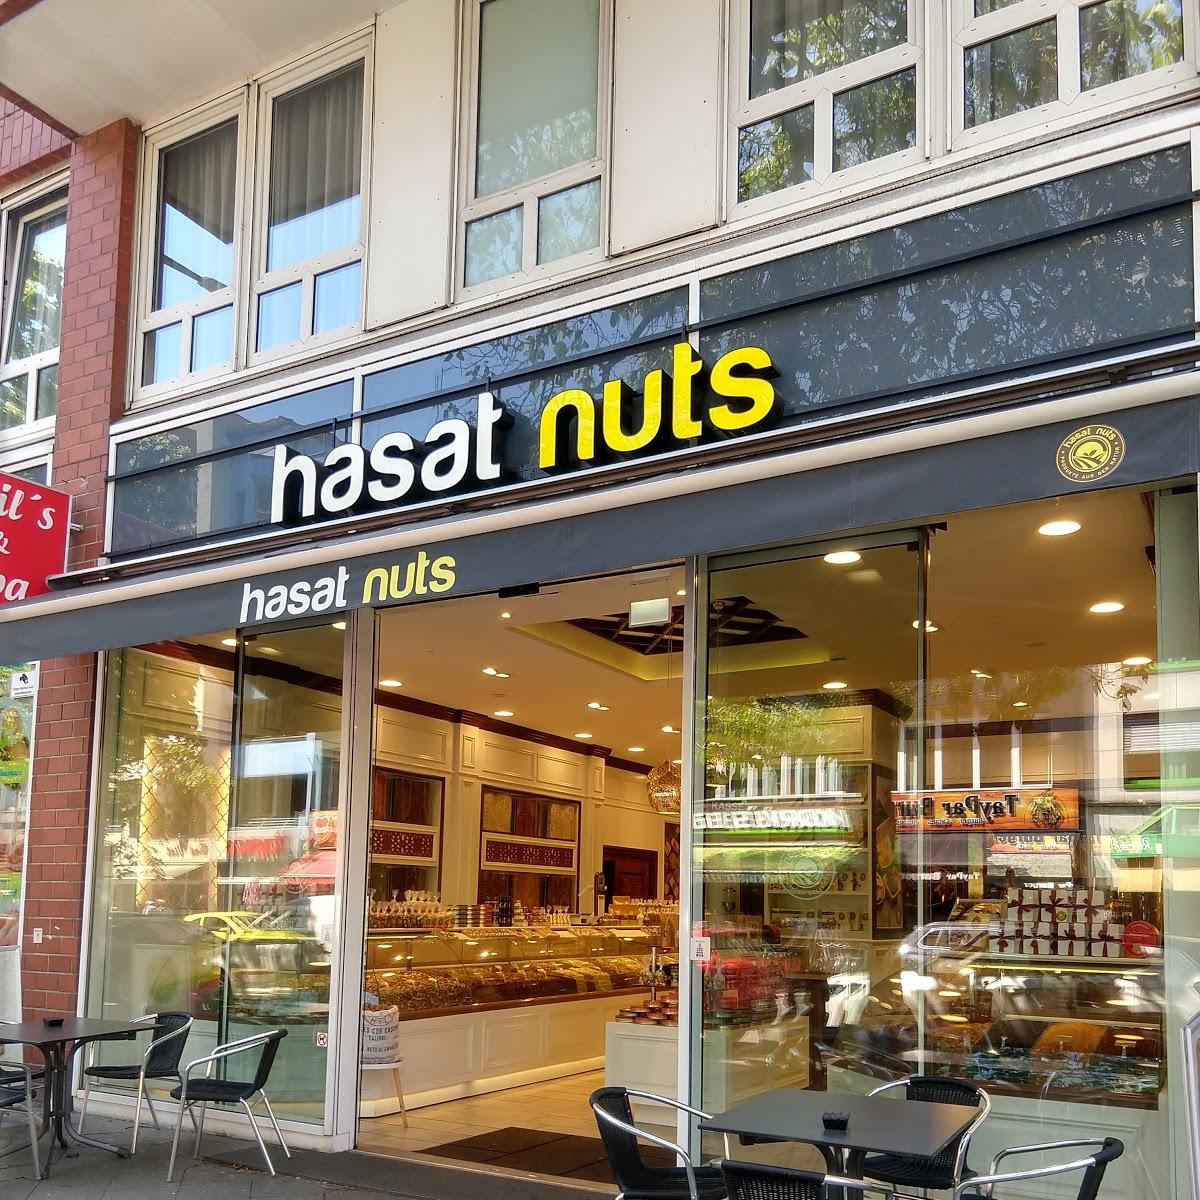 Restaurant "Hasat Nuts" in Berlin